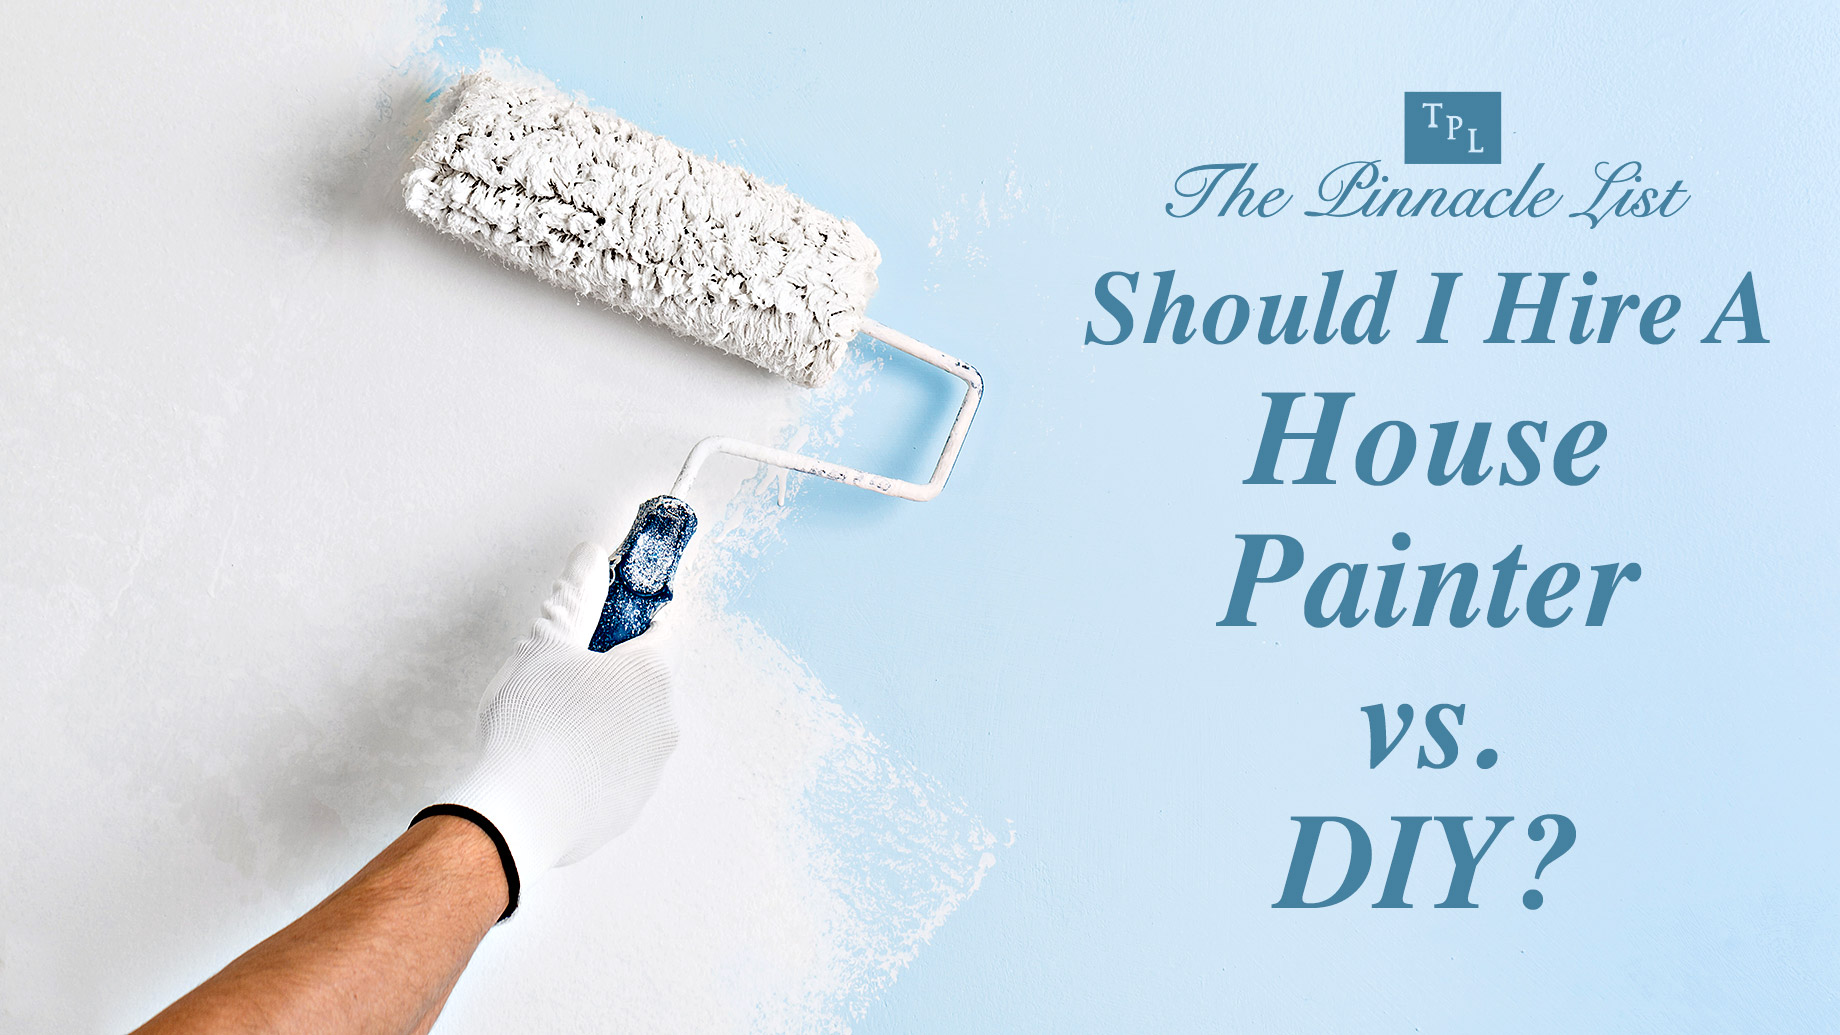 Should I Hire A House Painter vs. DIY?